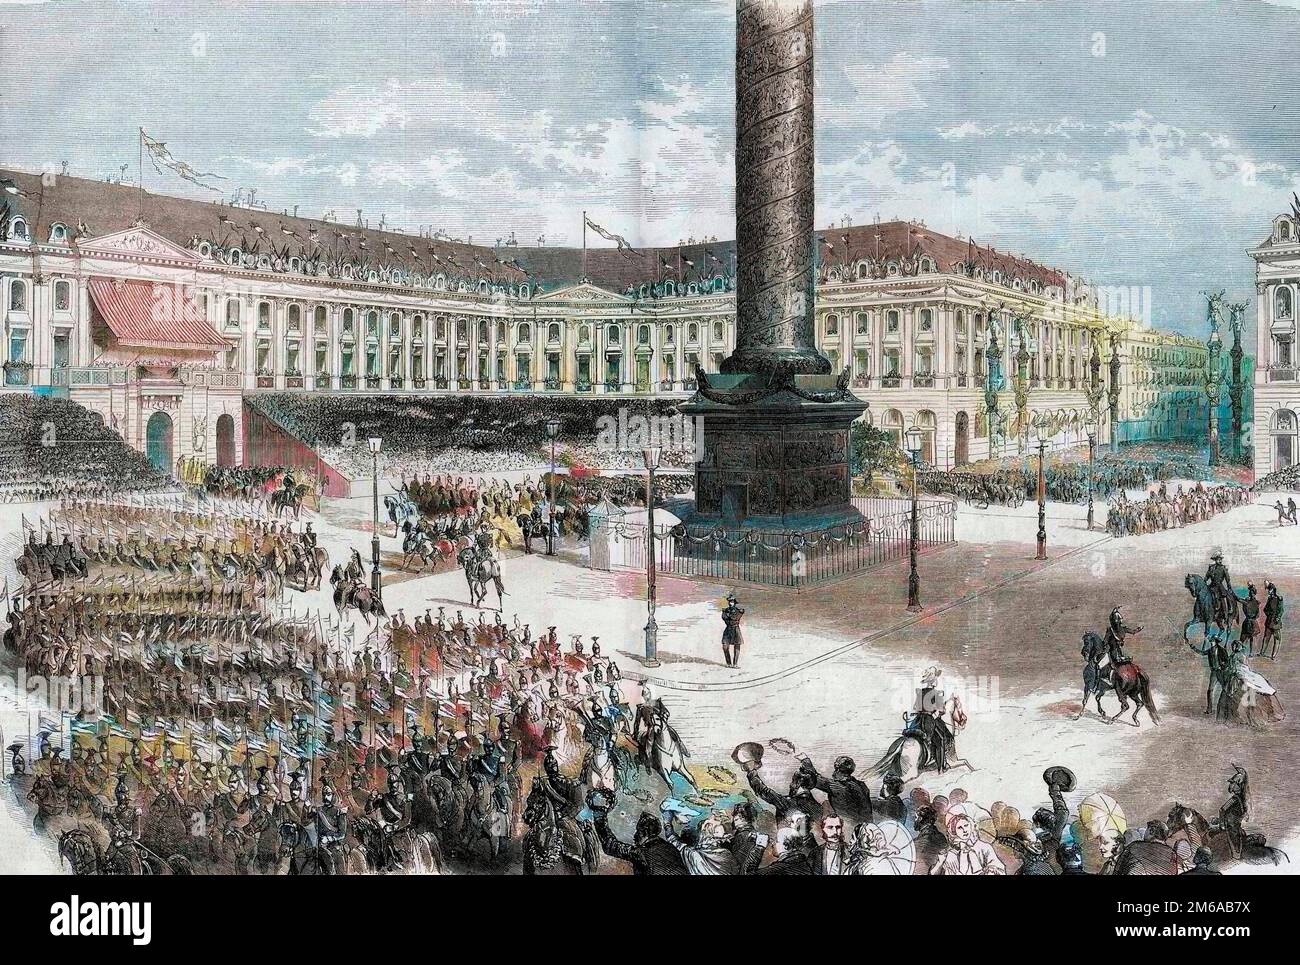 Die Paris Fetes, die Armee Italiens, die vor dem Kaiser schändet, am Place Vendome - Guerre d'Italie - Rentree des troupes, Place Vendome, A Paris, Saluees par Napoleon III, le 14 aout 1859 - Gravure de 1860 Stockfoto